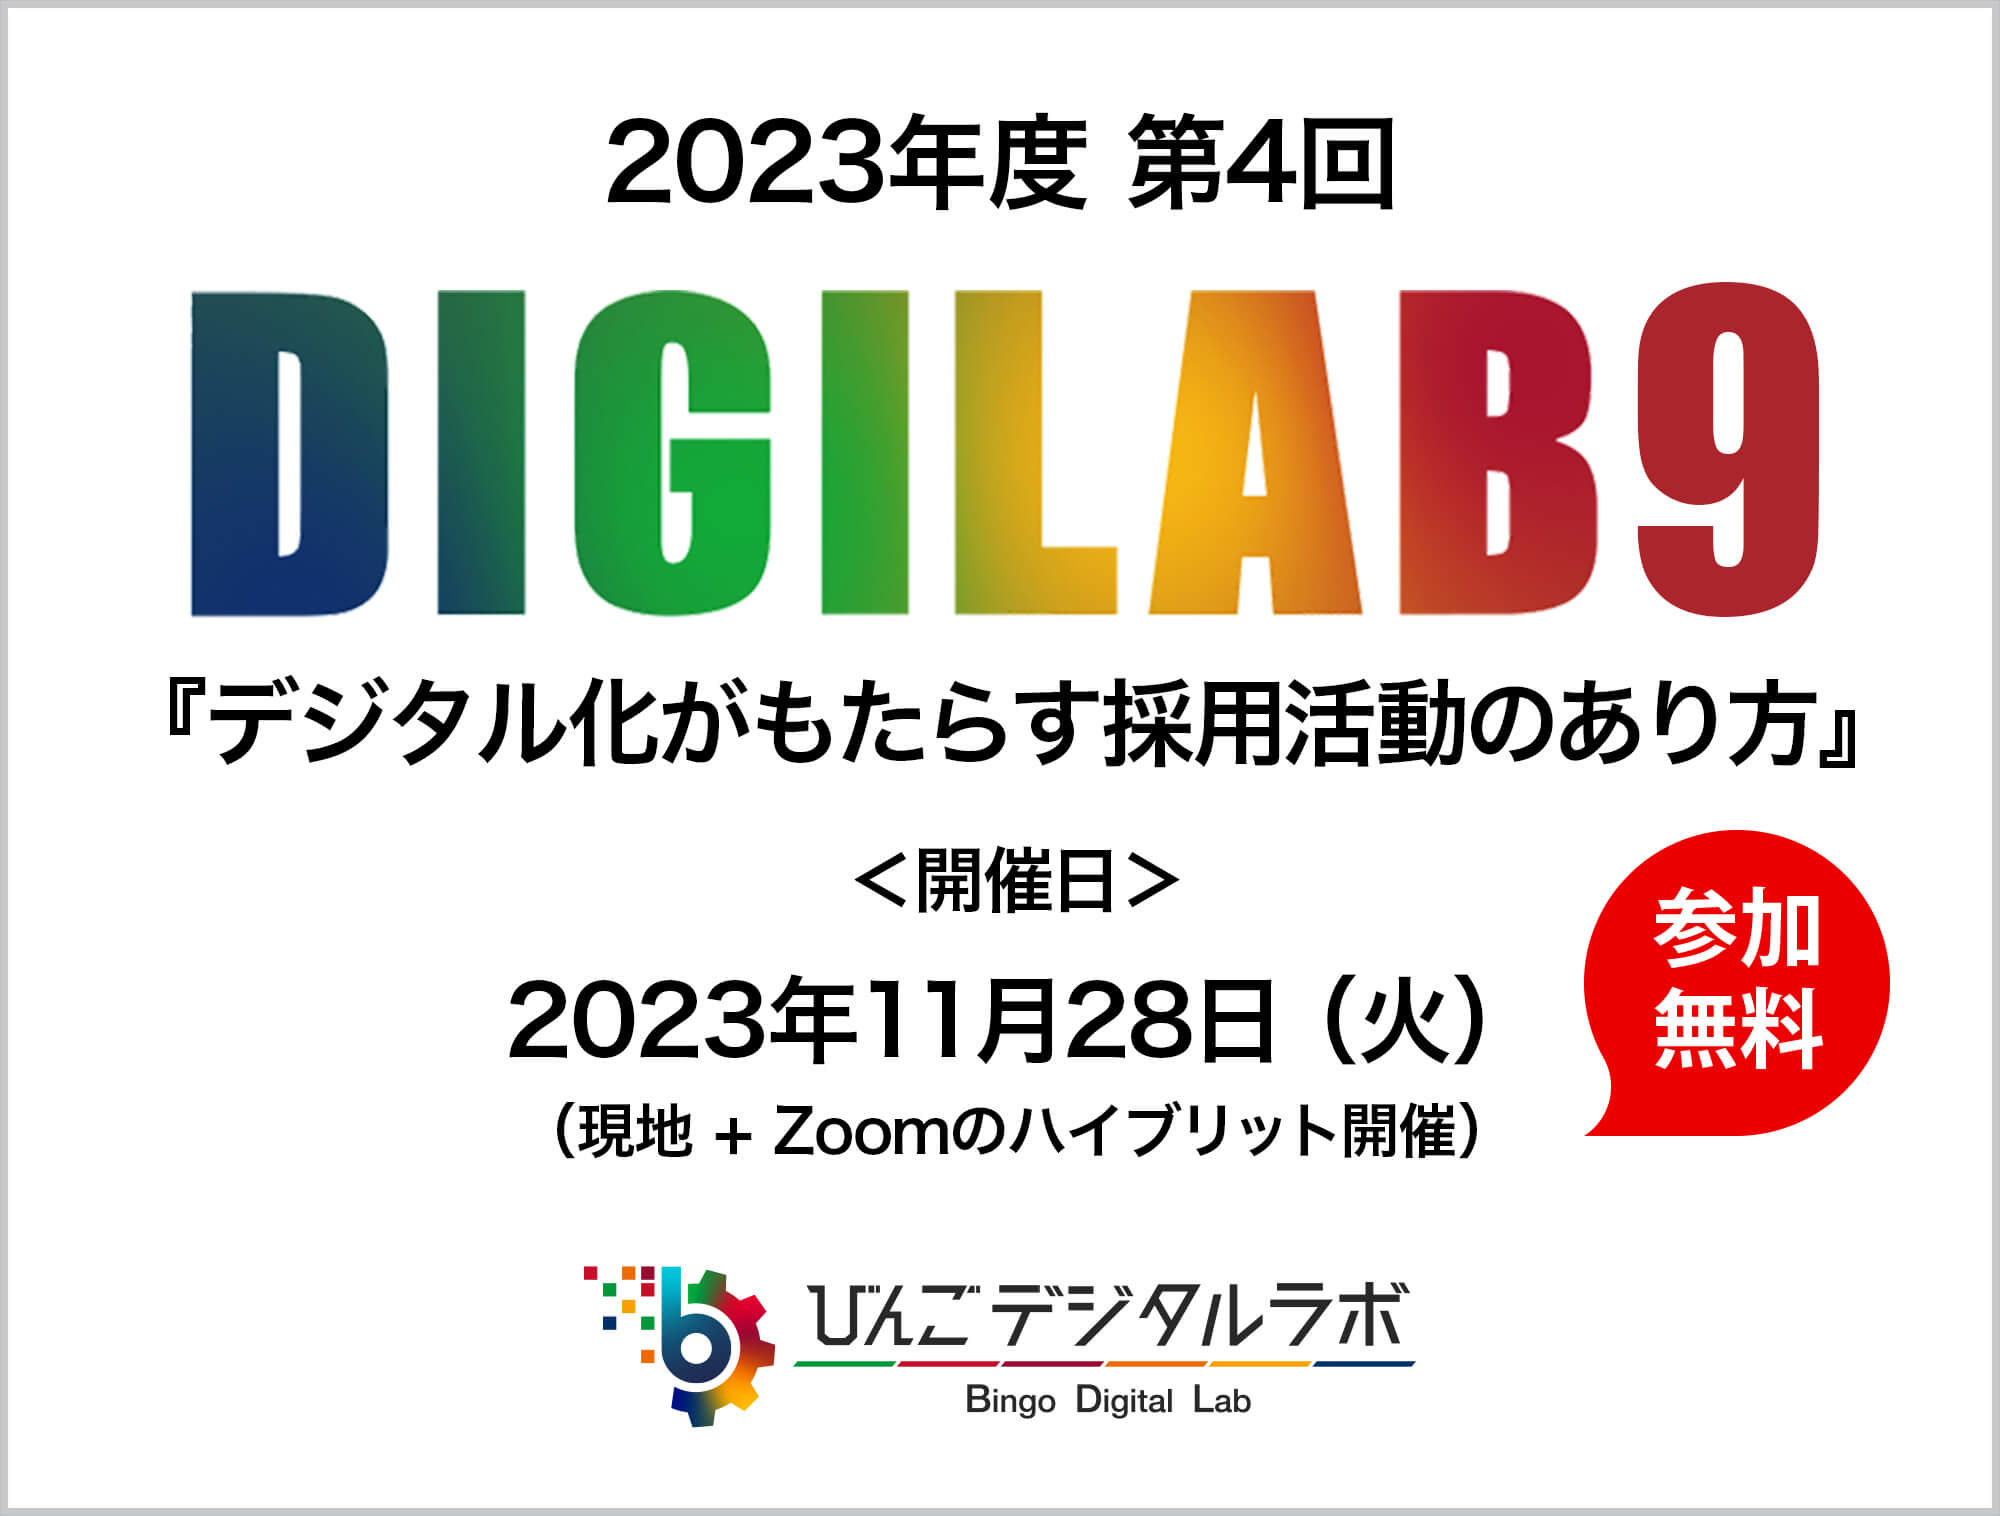 「デジタル化がもたらす採用活動のあり方」 ～2023年度（令和5年度）びんごデジタルラボイベント『DIGILAB9』をおこないます～